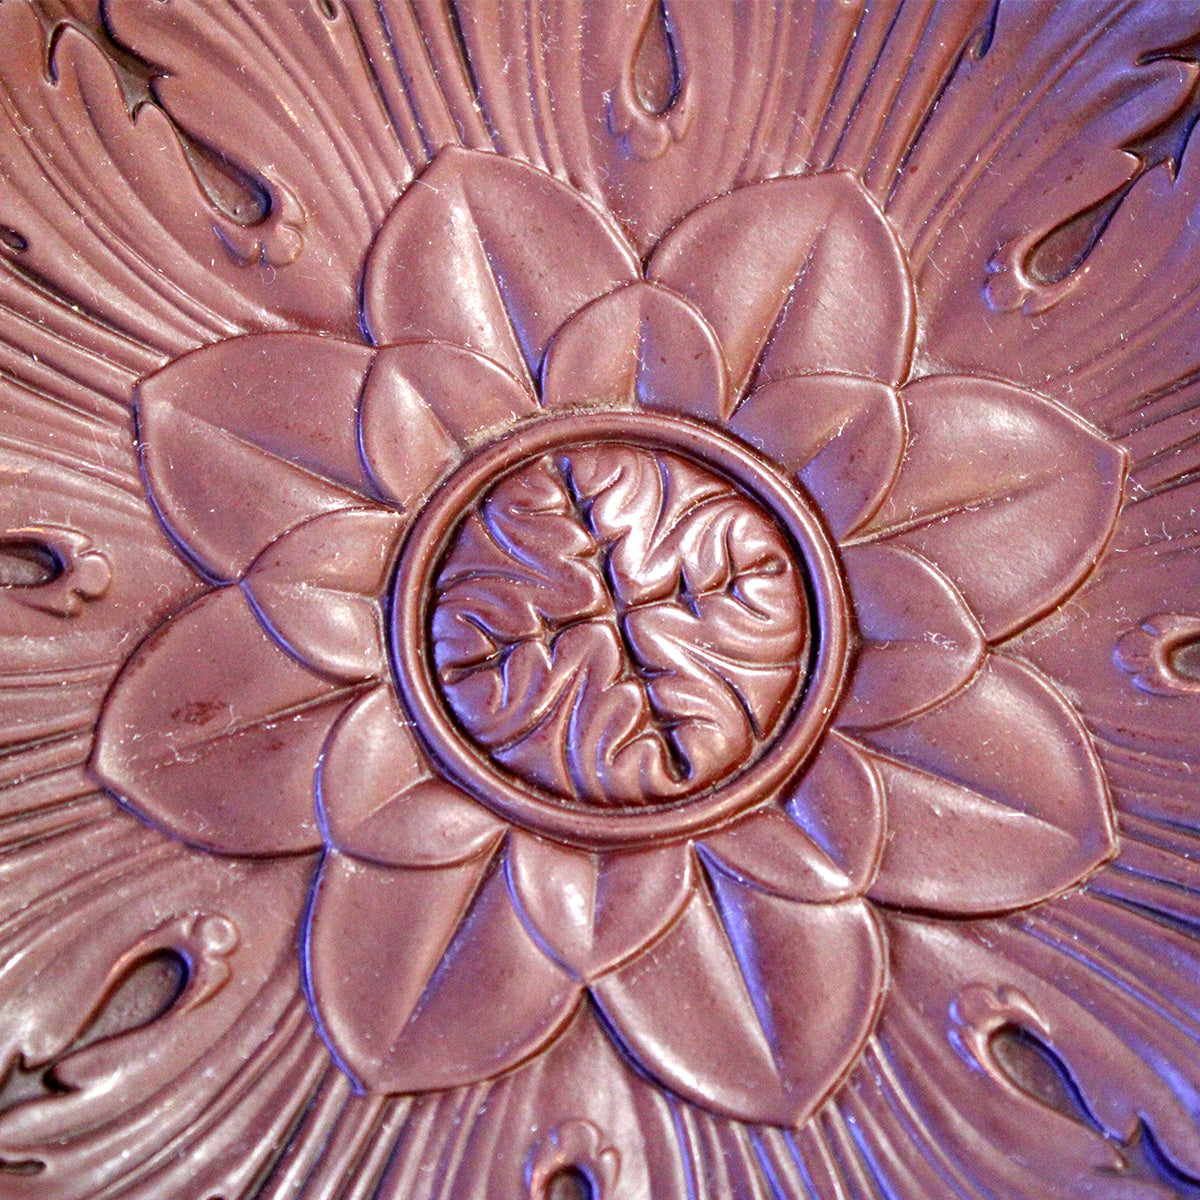 Orientalsk porcelænsfad med flotte detaljer af lotus blomst